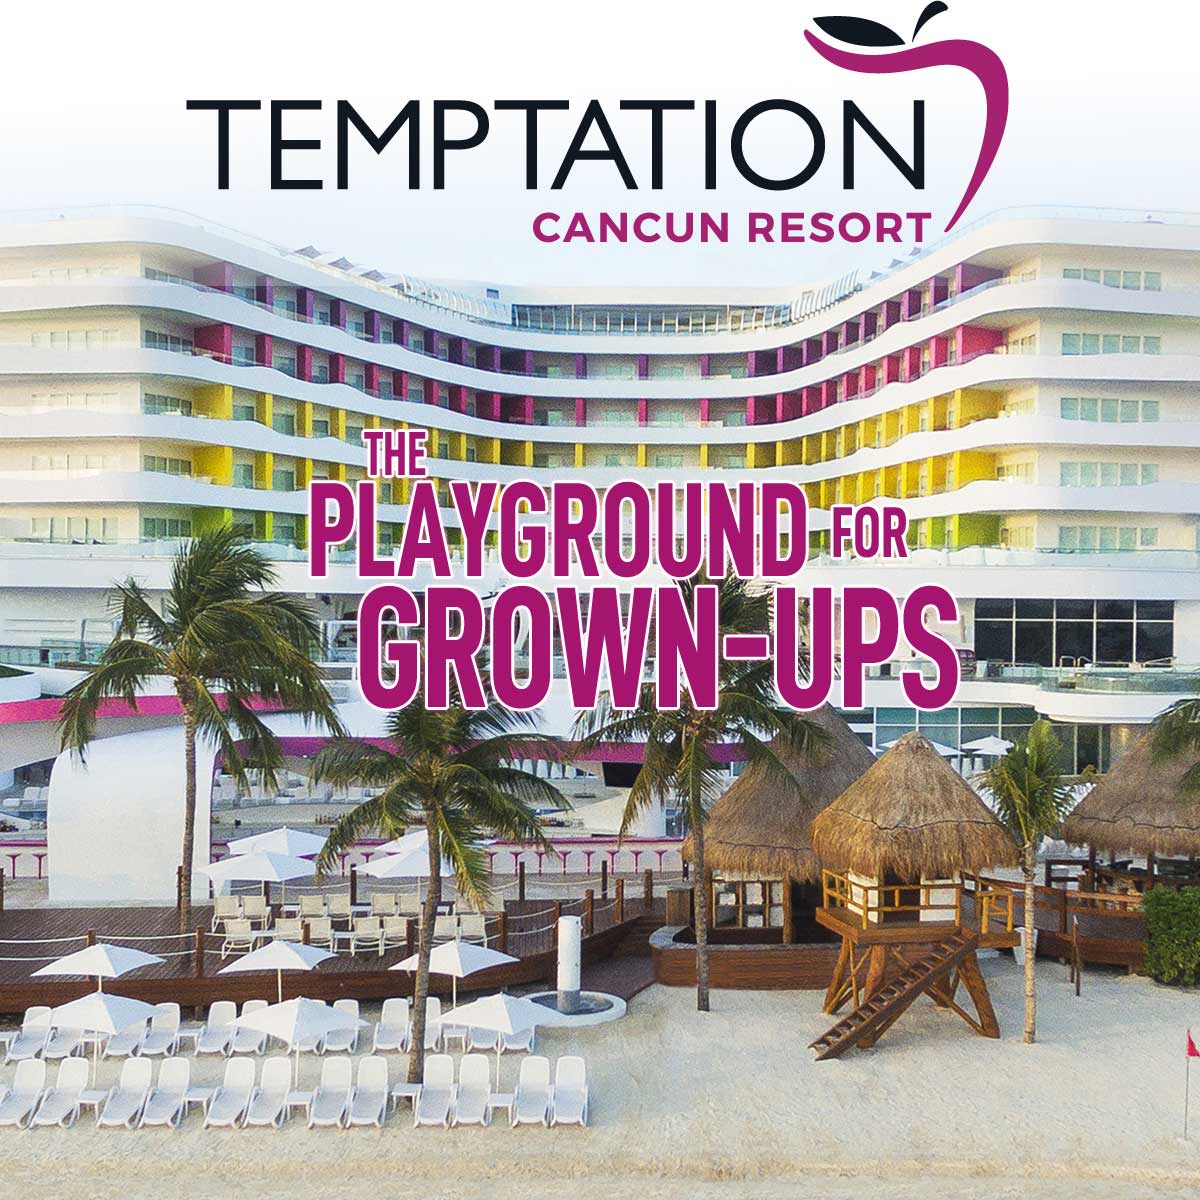 Temptation Cancun picture photo